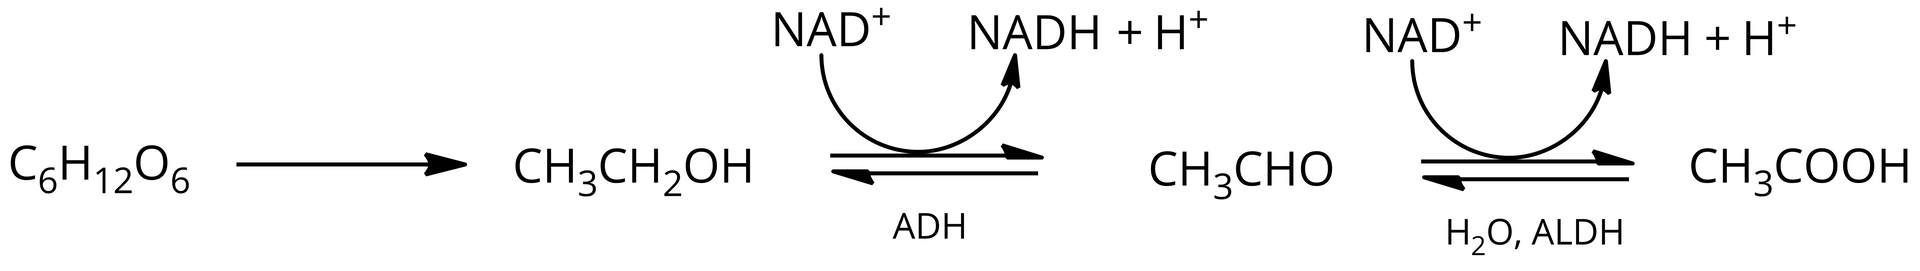 Ilustracja przedstawiająca schemat biosyntezy kwasu etanowego. Cząsteczka glukozy o wzorze sumarycznym C6H12O6. Strzałka w prawo, za strzałką cząsteczka etanolu o wzorze C2H5OH. Strzałka w prawo, pod strzałką dehydrogenaza alkoholowa ADH, pod wpływem której zachodzi przemiana &lt;math aria‑label="N A D indeks górny plus koniec indeksu"&gt;NAD+ do &lt;math aria‑label="N A D H"&gt;NADH dodać H+, za strzałką cząsteczka acetaldehydu o wzorze CH3CHO. Strzałka w prawo, nad strzałką cząsteczka wody, za strzałką cząsteczka hydratu acetaldehydu o wzorze CH3COH2. Strzałka w prawo, pod strzałką dehydrogenaza aldehydowa ALDH, reakcja zachodzi kosztem &lt;math aria‑label="N A D indeks górny plus koniec indeksu"&gt;NAD+, z utworzeniem &lt;math aria‑label="N A D H"&gt;NADH oraz H+. Za strzałką cząsteczka kwasu octowego, czyli kwasu etanowego o następującym wzorze CH3COOH.